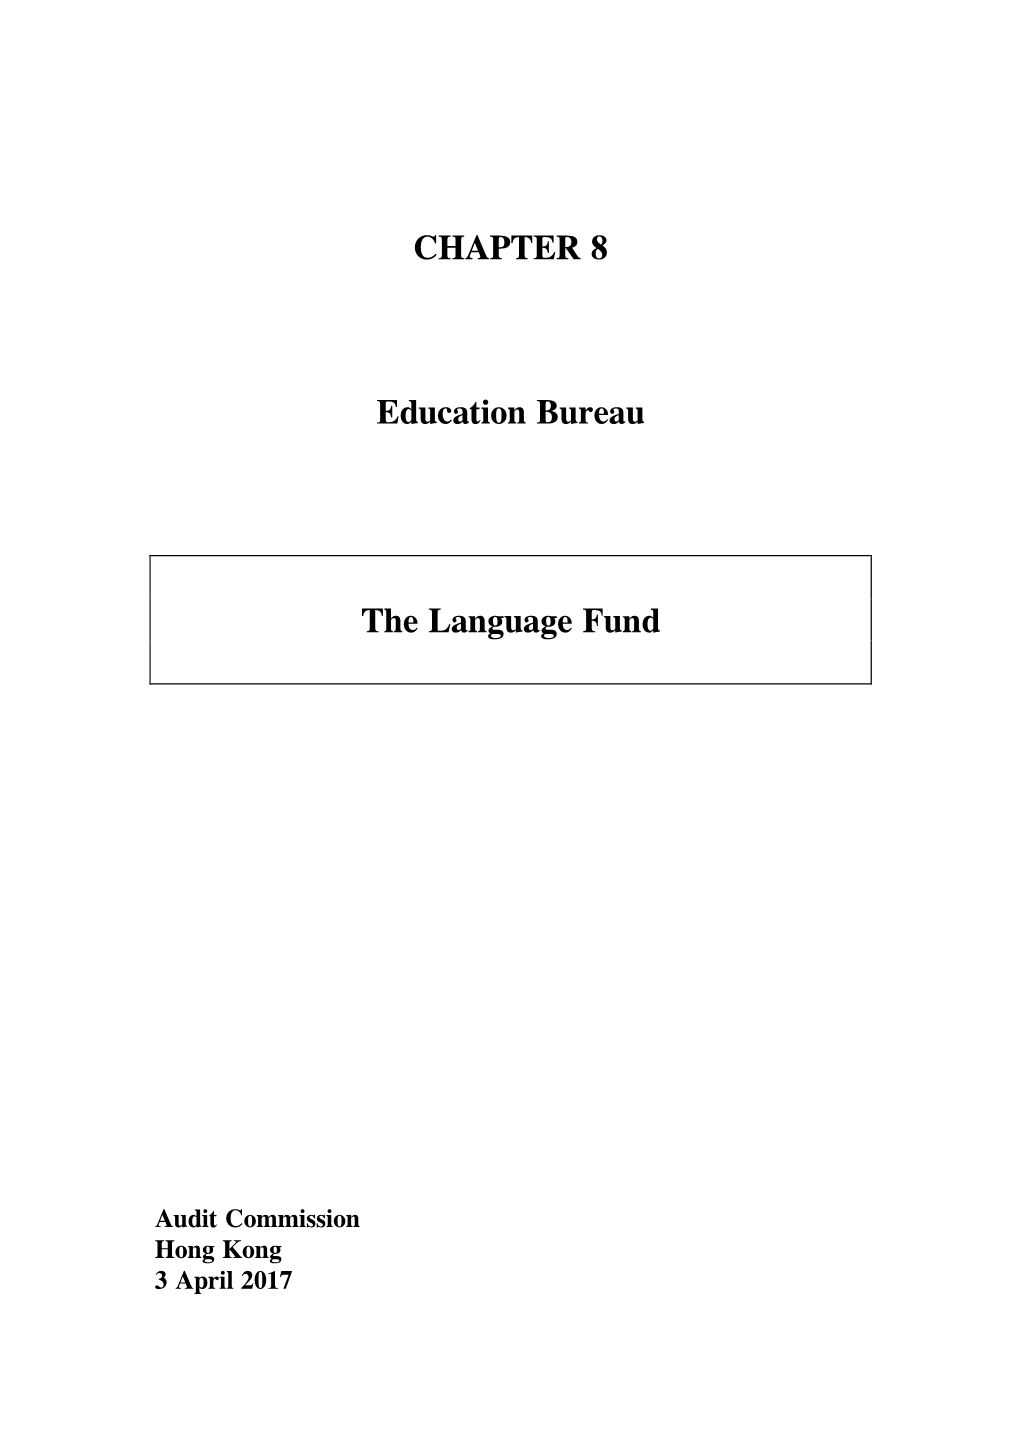 CHAPTER 8 Education Bureau the Language Fund